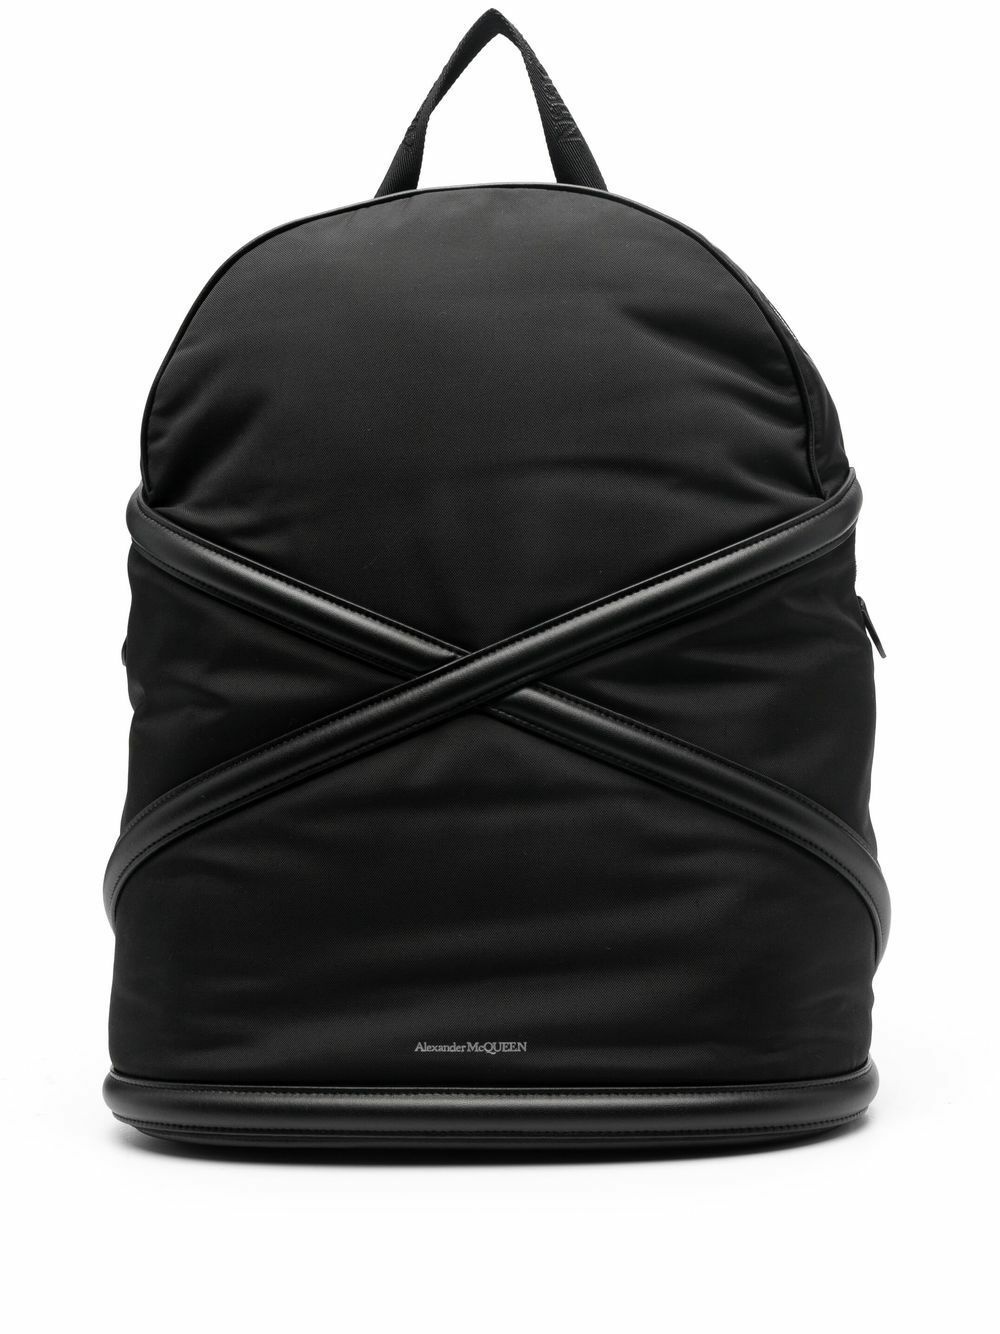 ALEXANDER MCQUEEN - Backpack With Logo Alexander McQueen